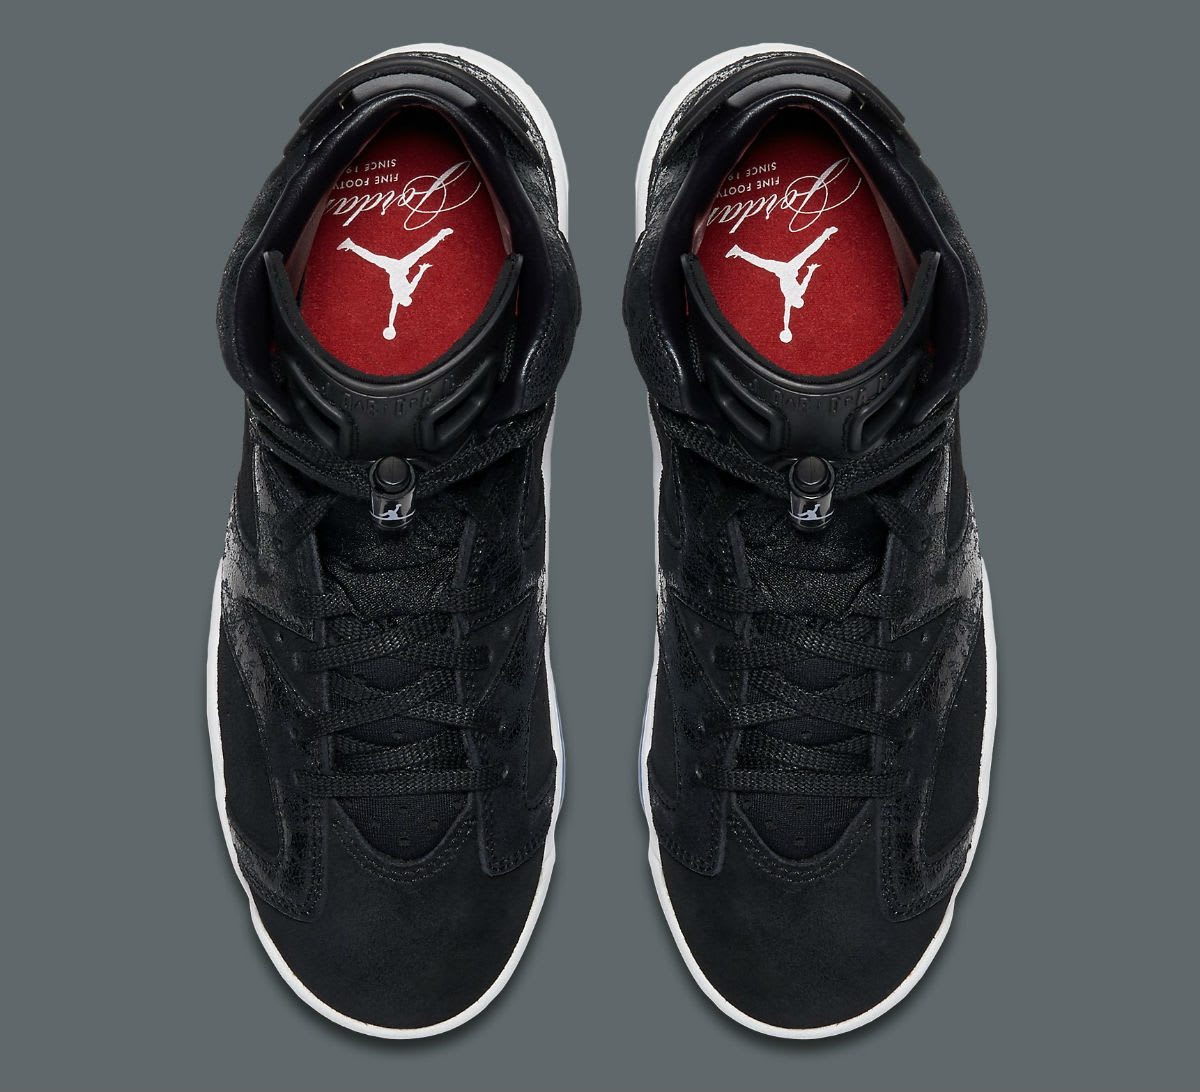 Air Jordan 6 Heiress Black Suede Release Date Top 881430-029